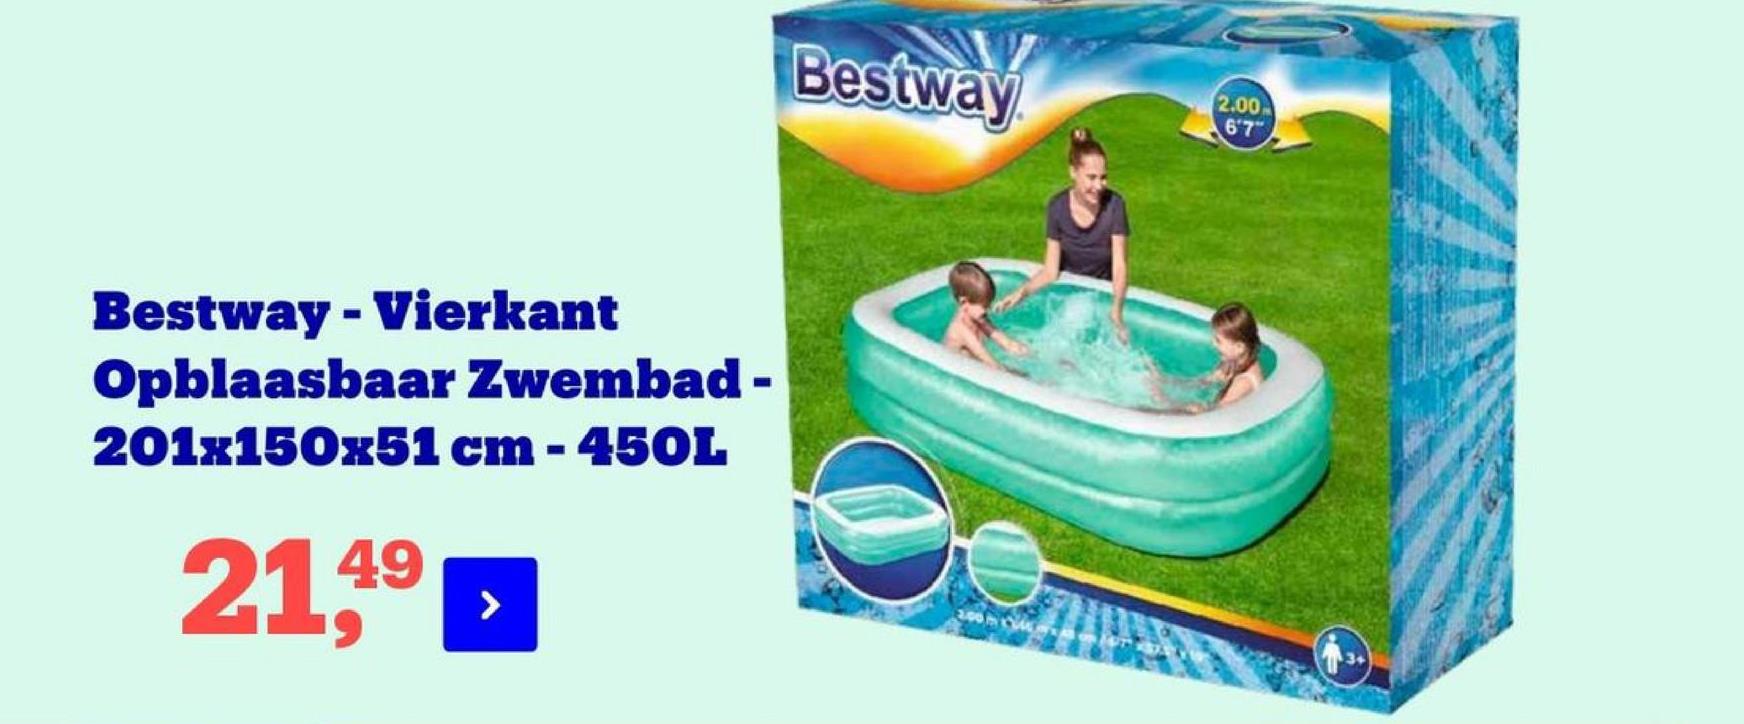 Bestway
2.00
67"
Bestway - Vierkant
Opblaasbaar Zwembad -
201x150x51 cm - 450L
21,49
2.COM
